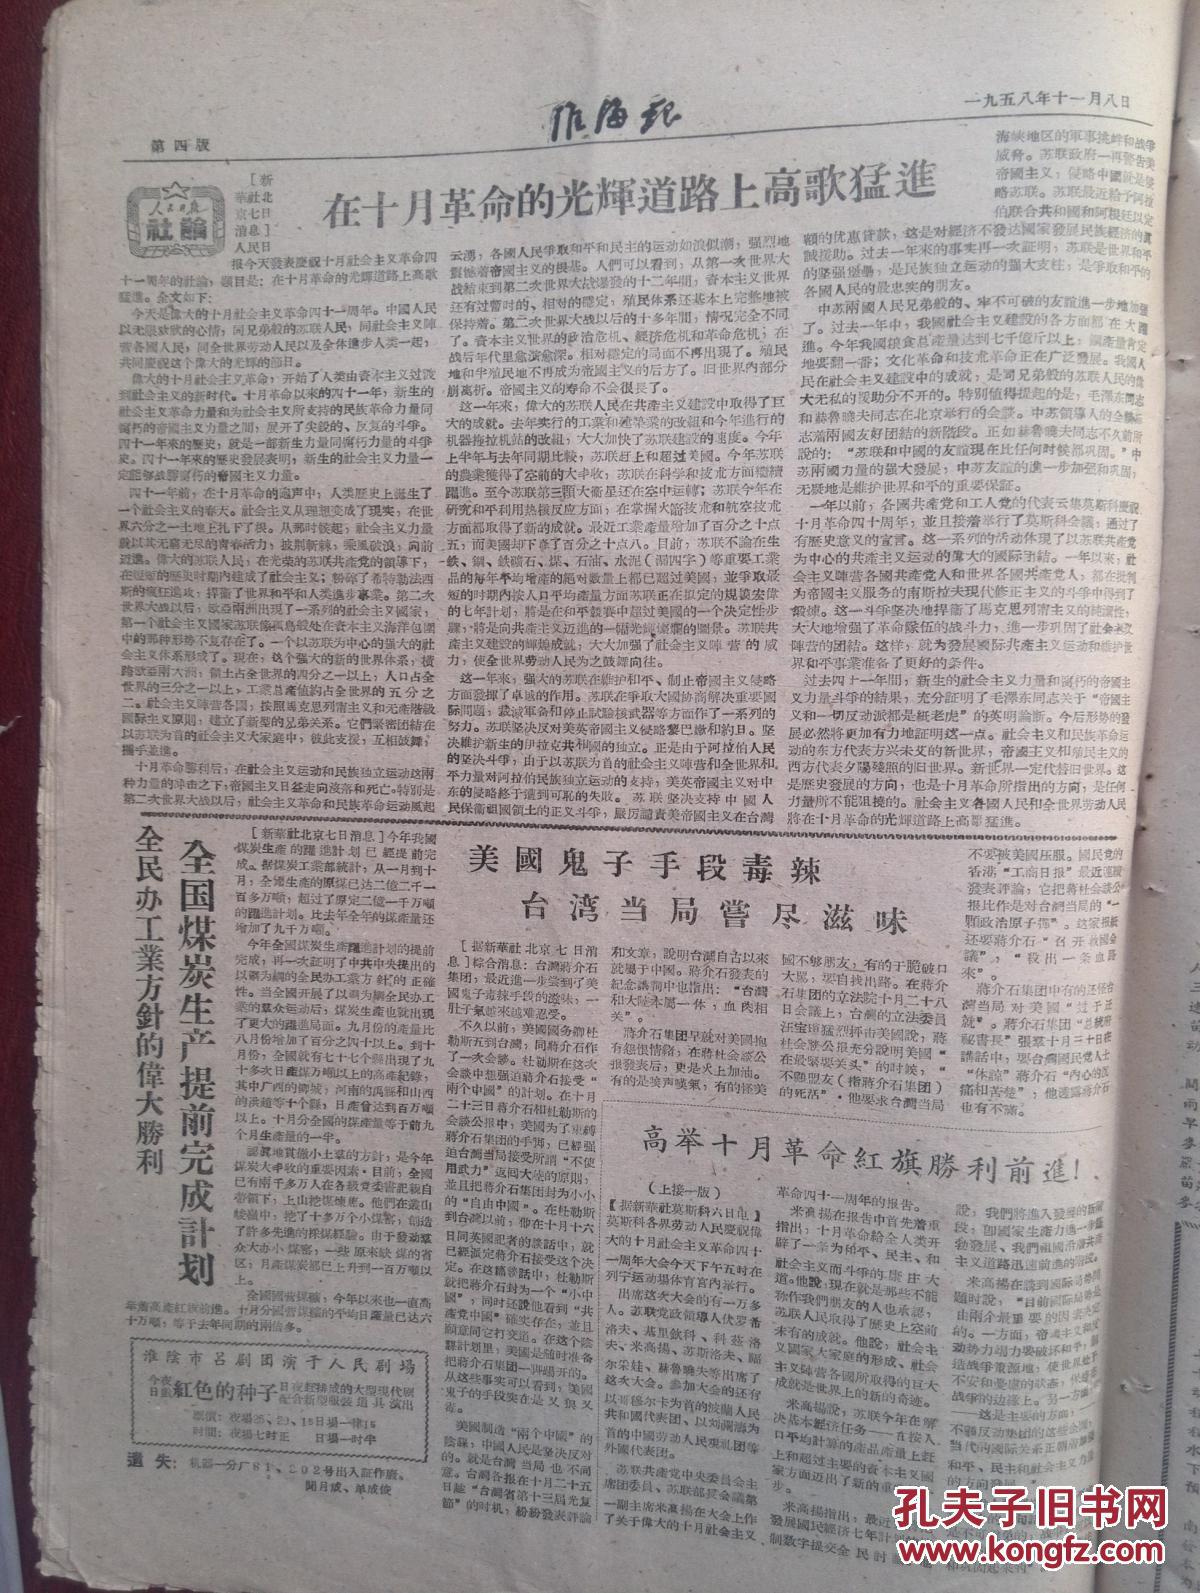 淮海报1958年11月8日(大跃进大炼钢铁)高举十